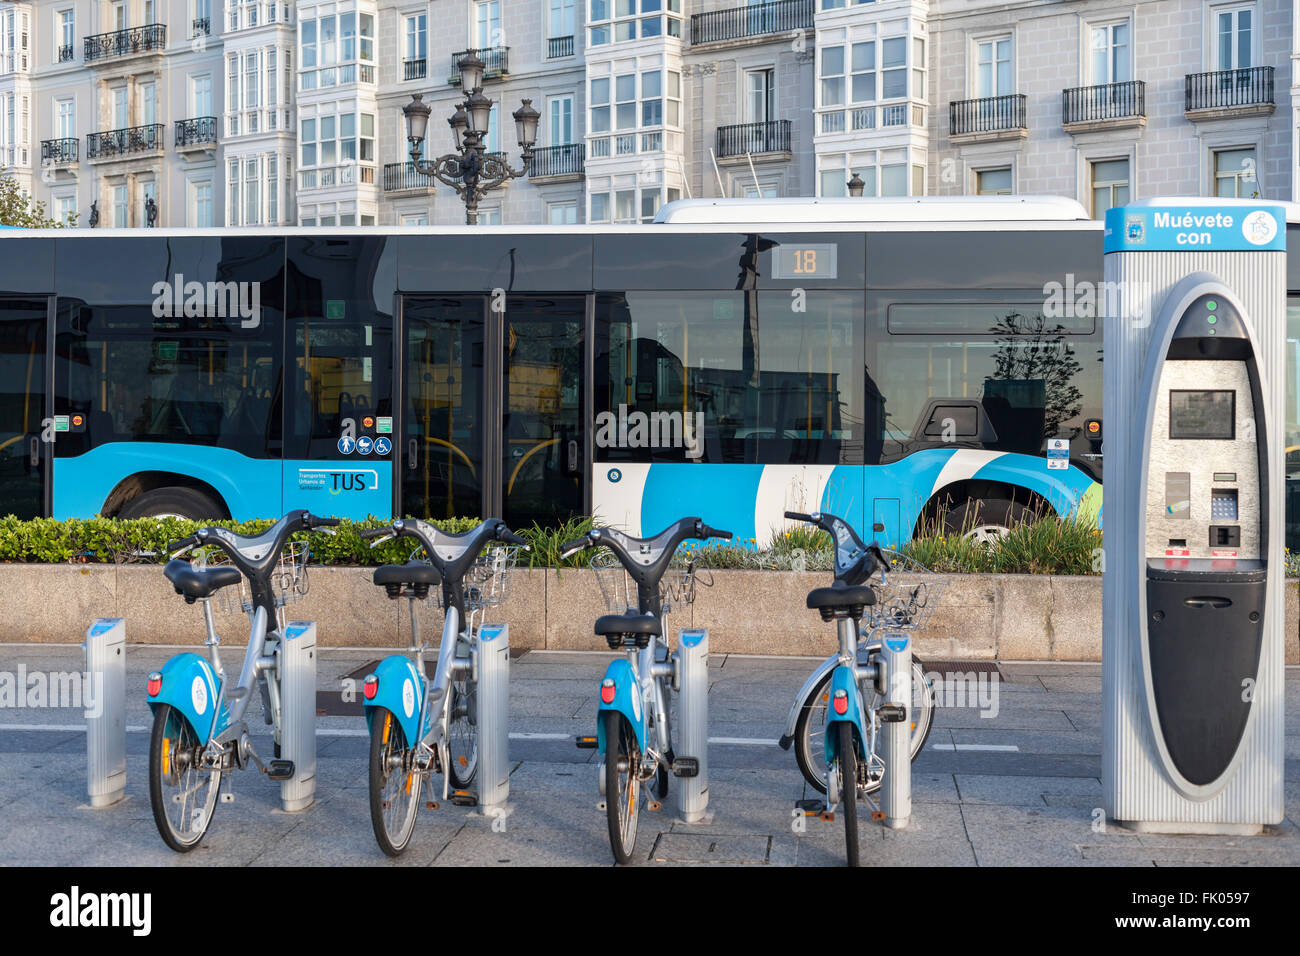 Des vélos et des bus publics à Santander, Espagne. Banque D'Images